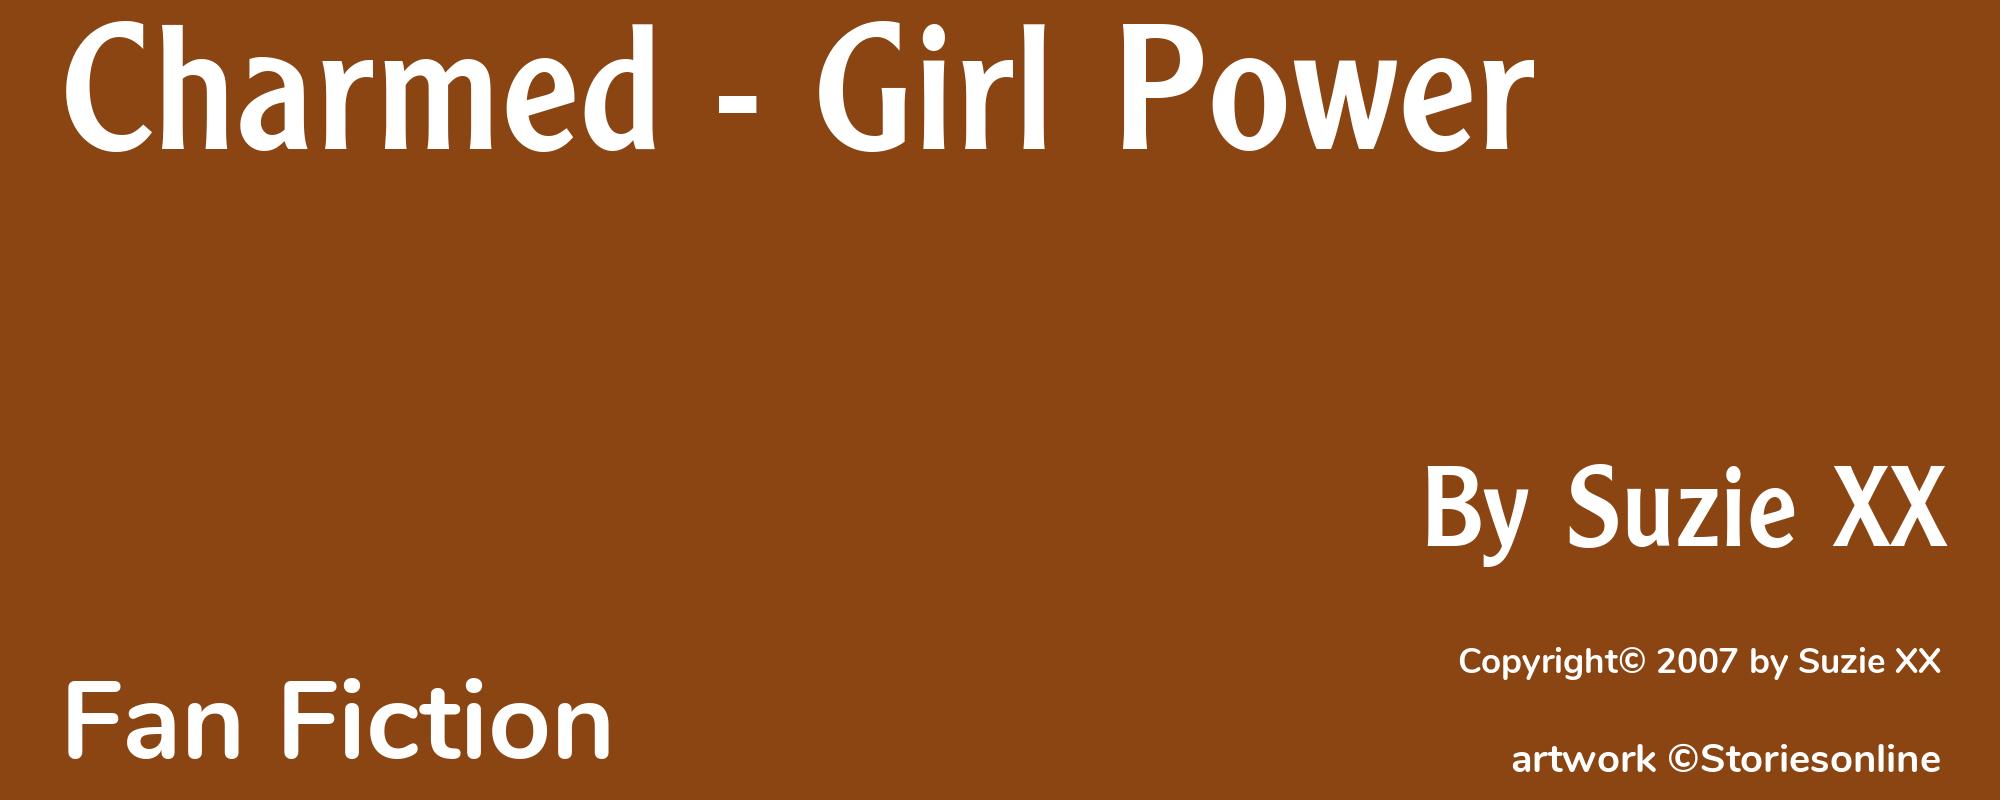 Charmed - Girl Power - Cover